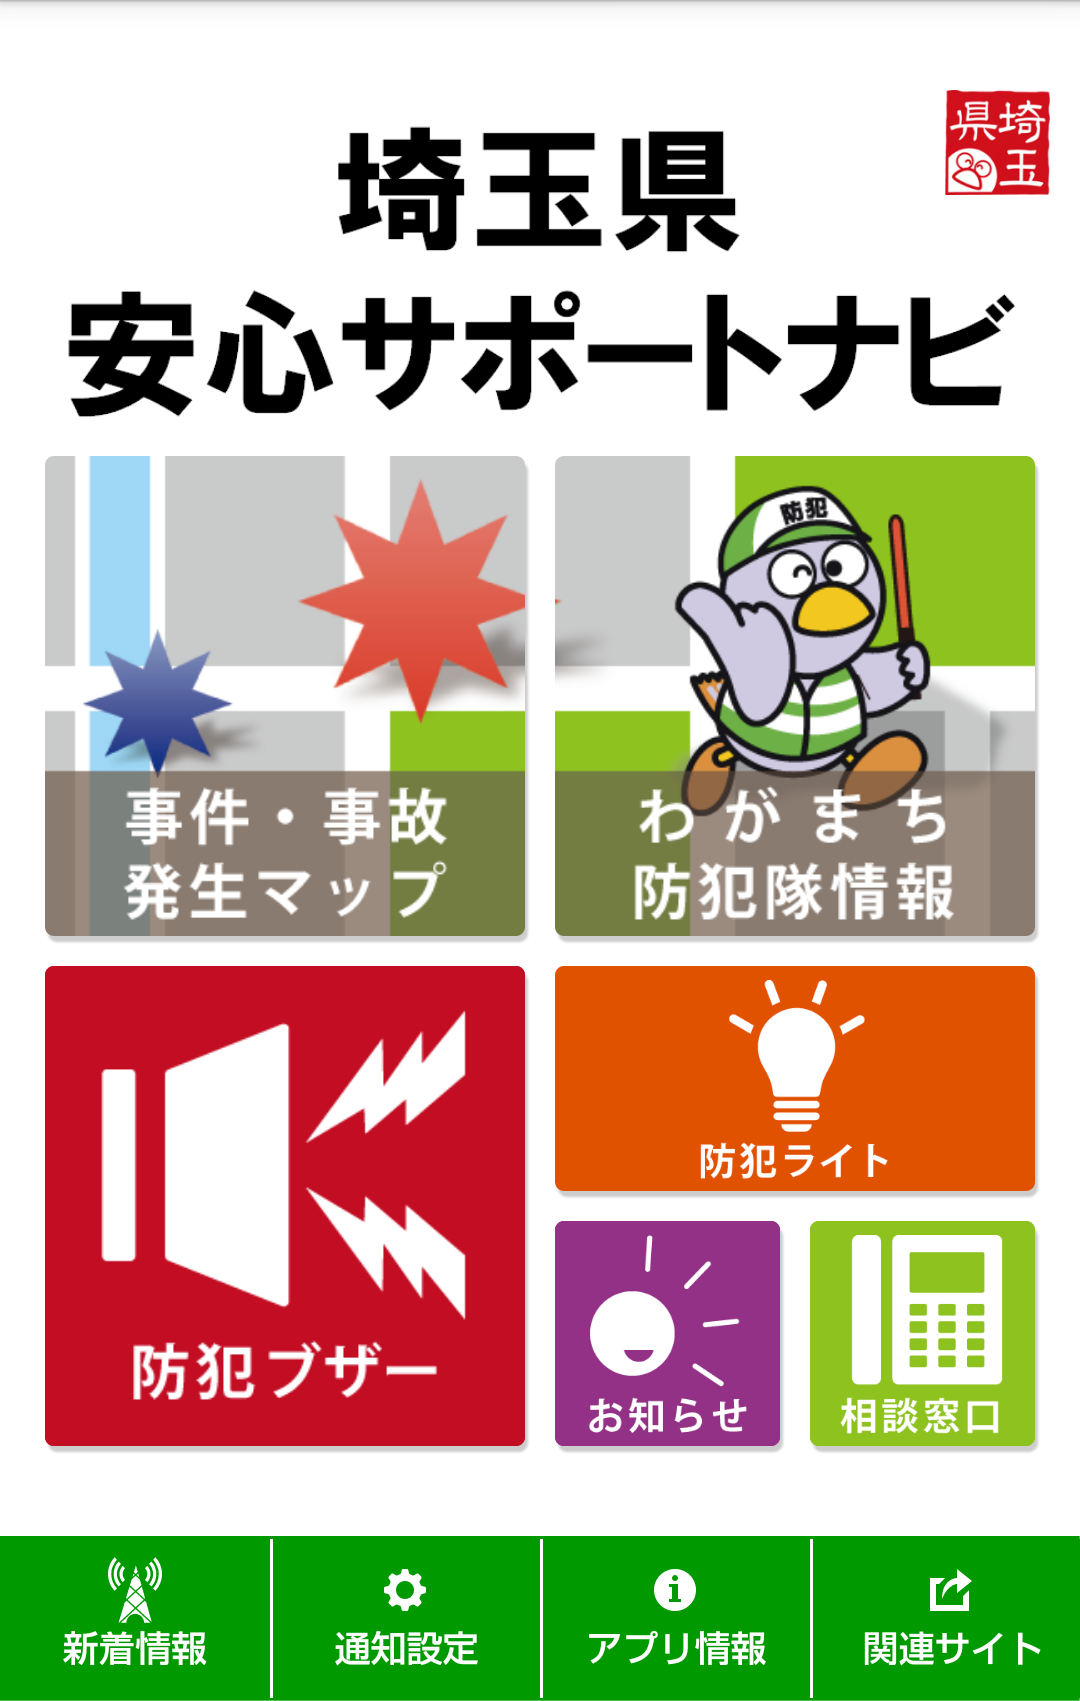 さいたま市の背中（78)『埼玉県安心サポートナビというアプリ』